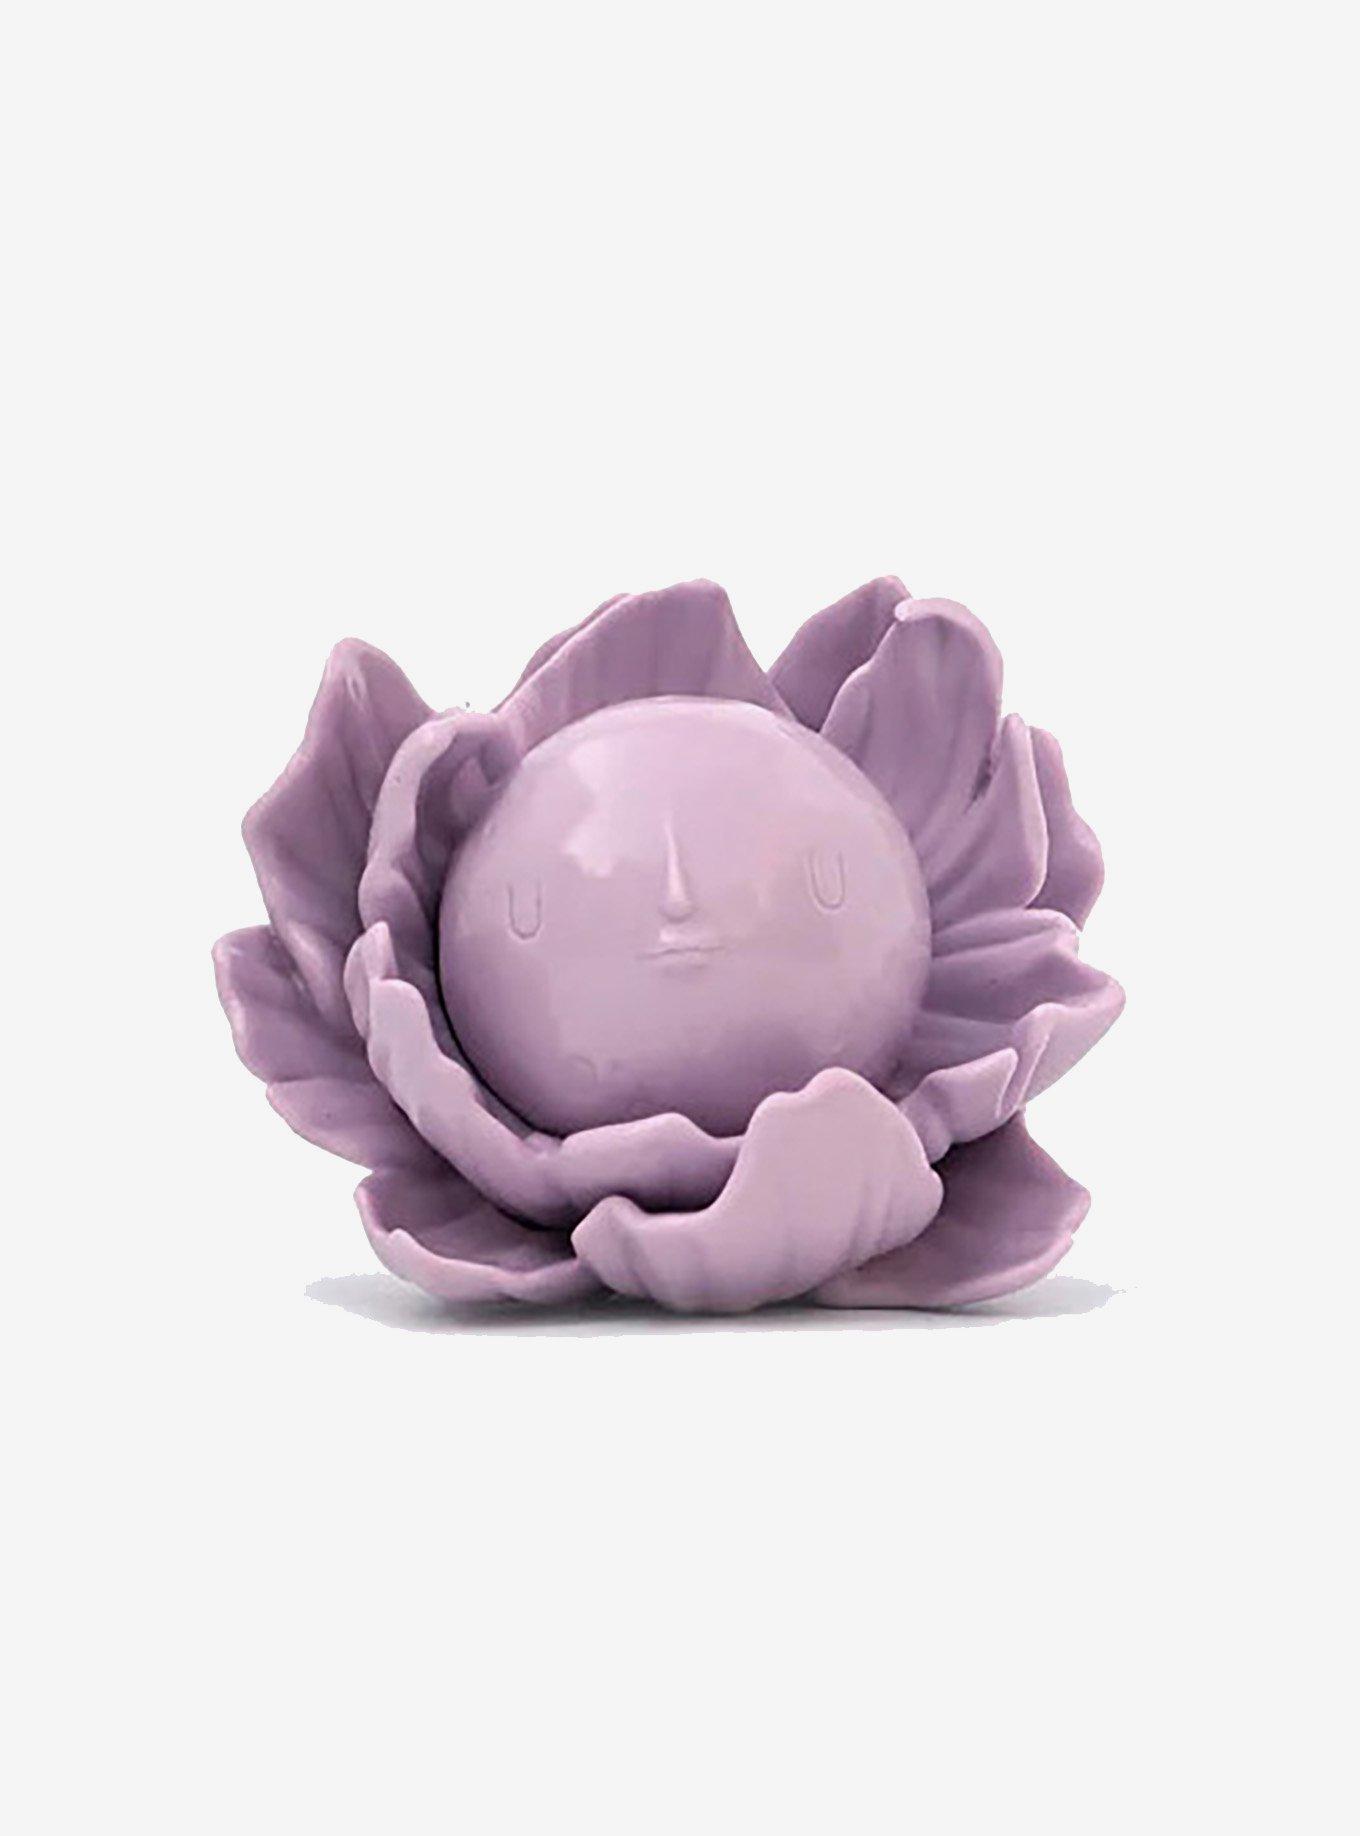 Yoskay Yamamoto Chibi Moon Flower Lavender Figure by Munky King